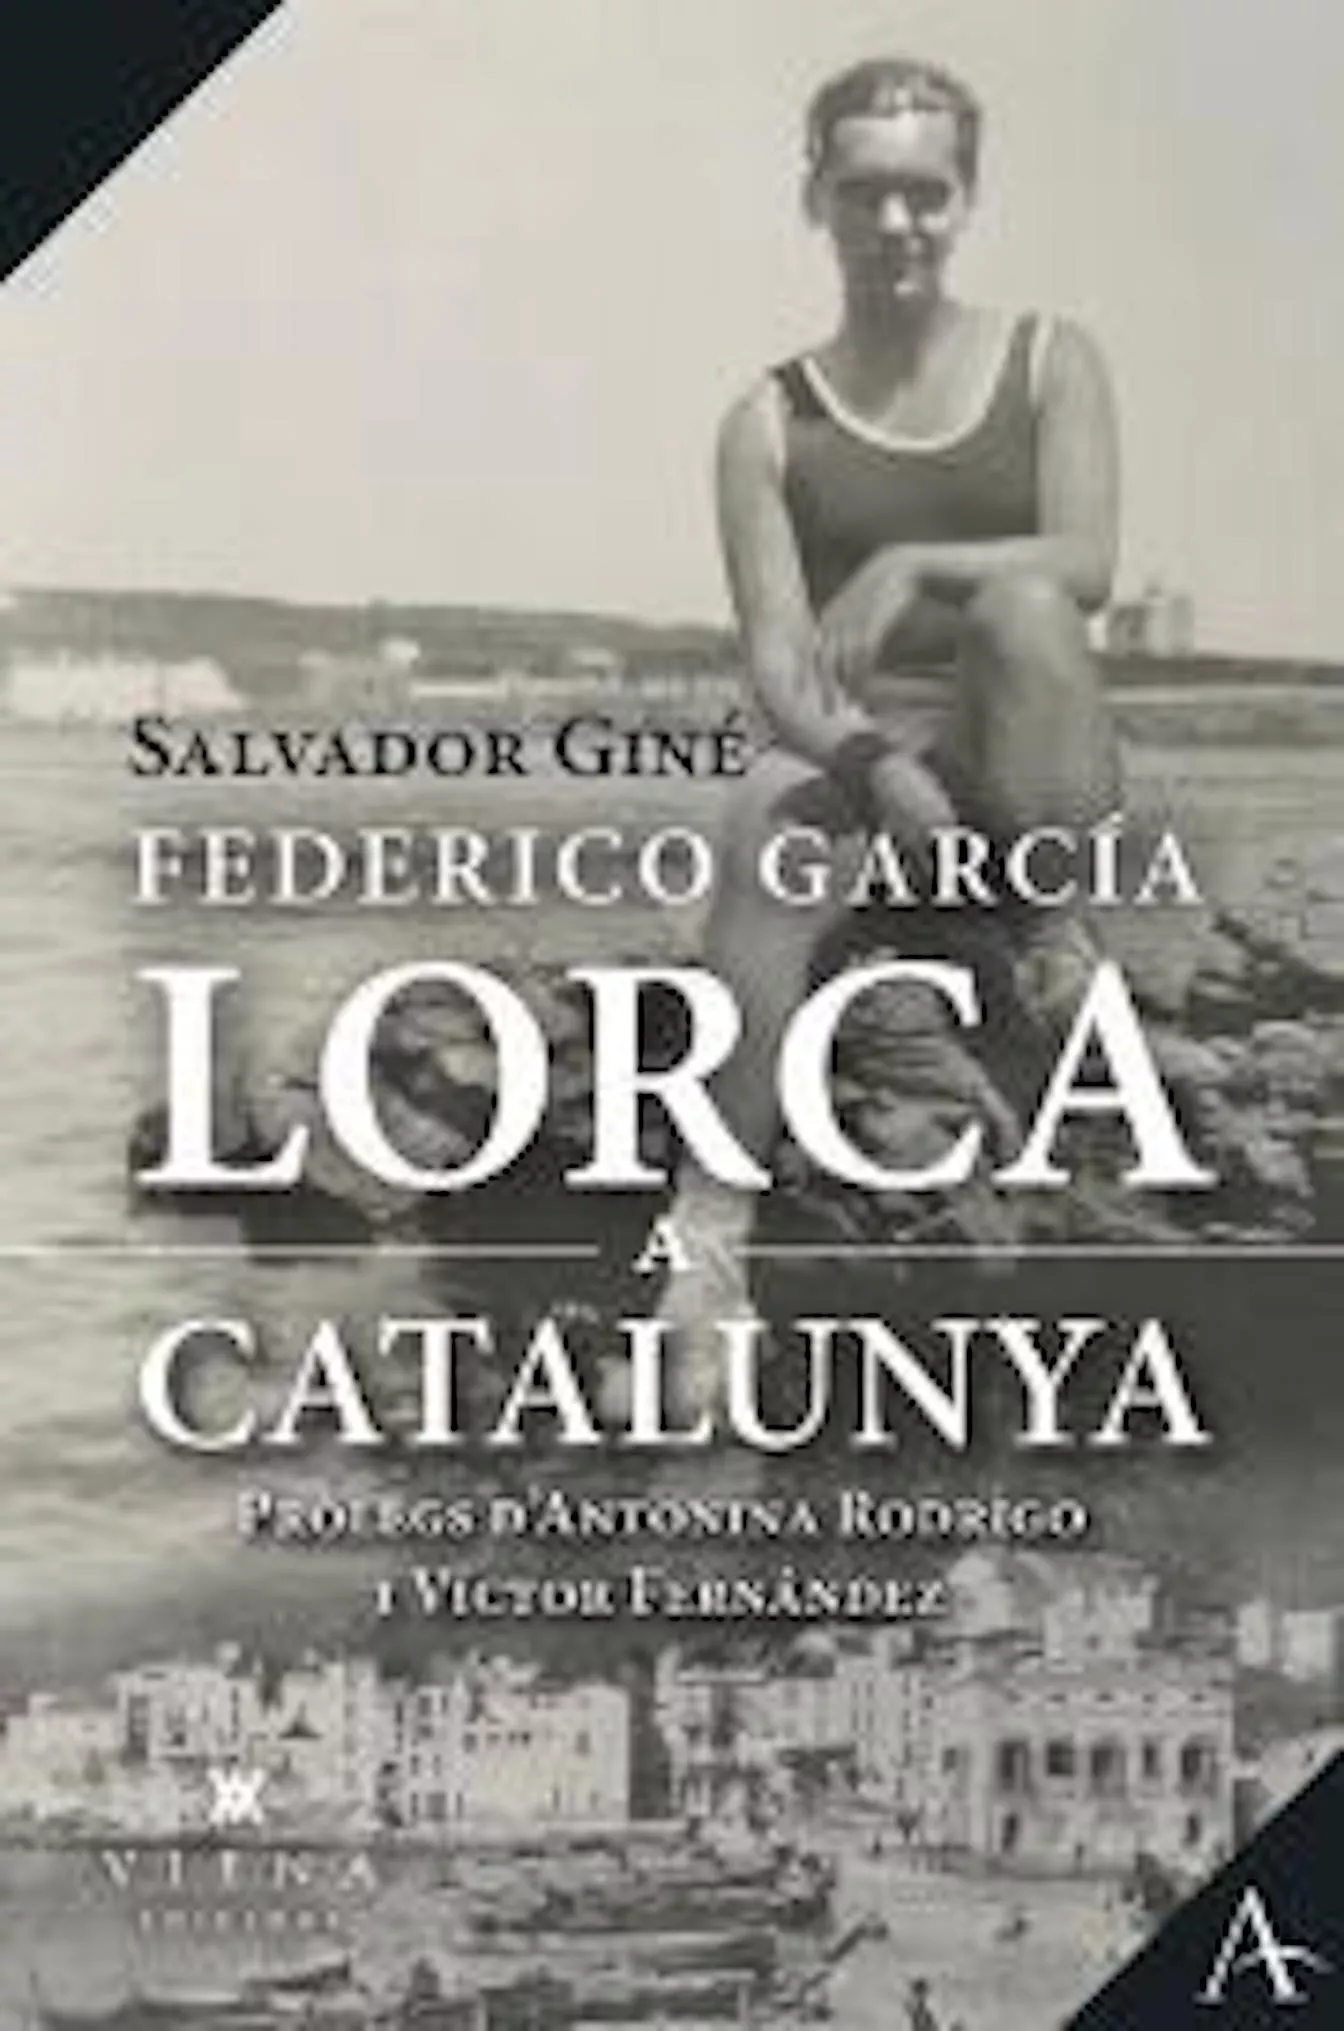 'Federico Garcia Lorca a Catalunya'